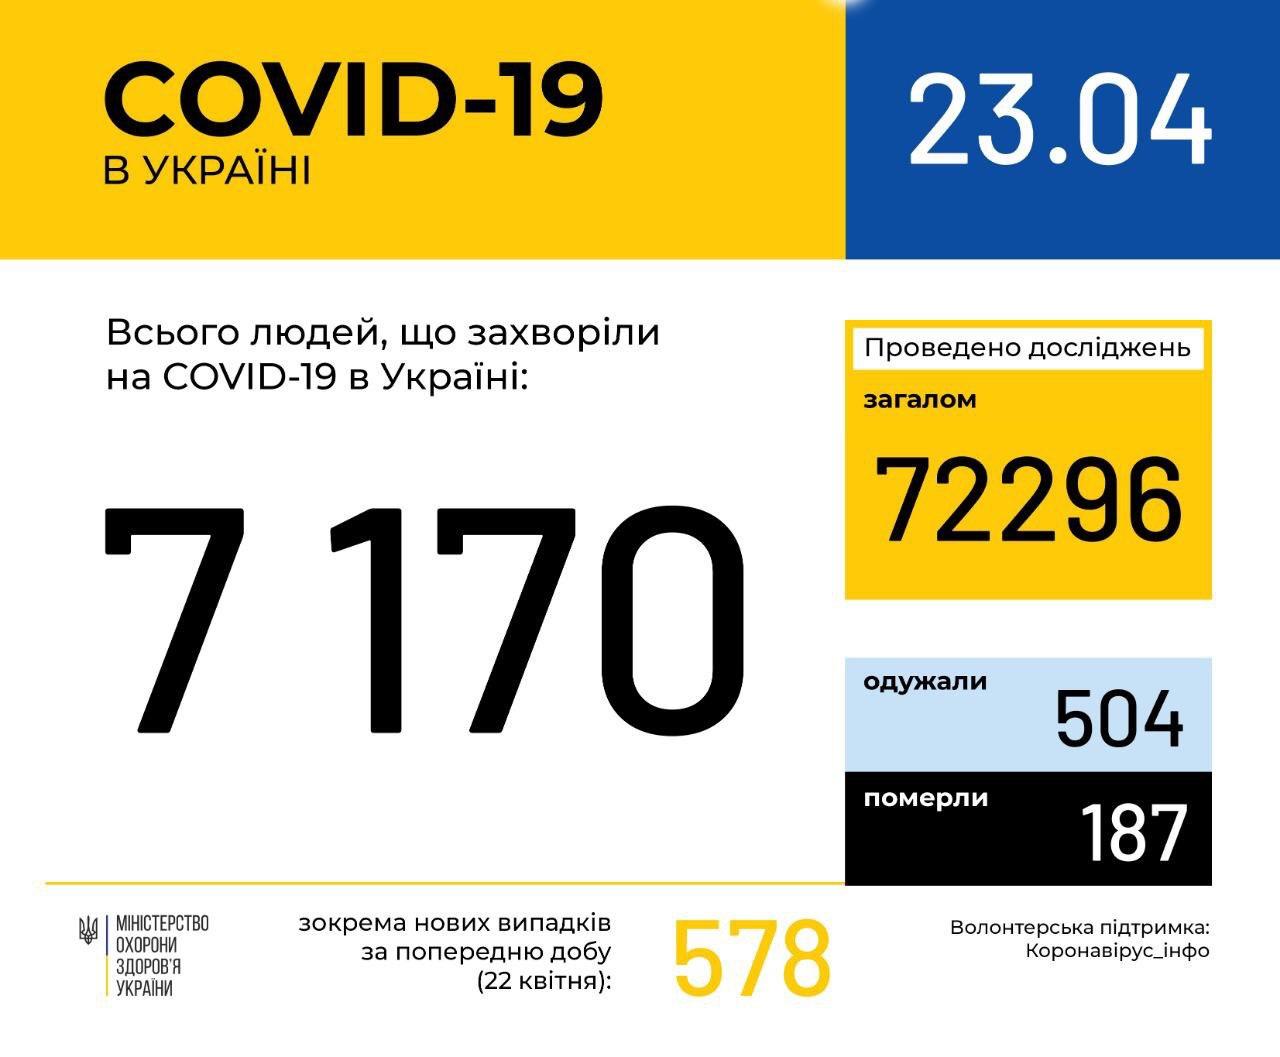 В Україні зафіксовано 7170 випадків коронавірусної хвороби COVID-19, - МОЗ